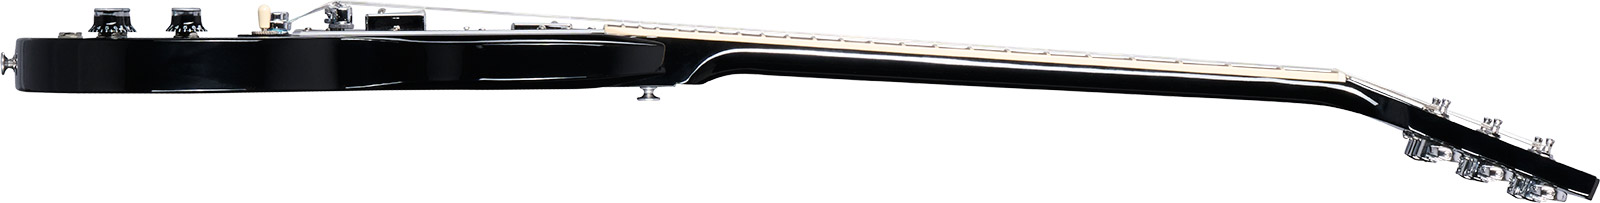 Gibson Sg Standard Custom Color 2h Ht Rw - Pelham Blue Burst - Guitarra eléctrica de doble corte. - Variation 2